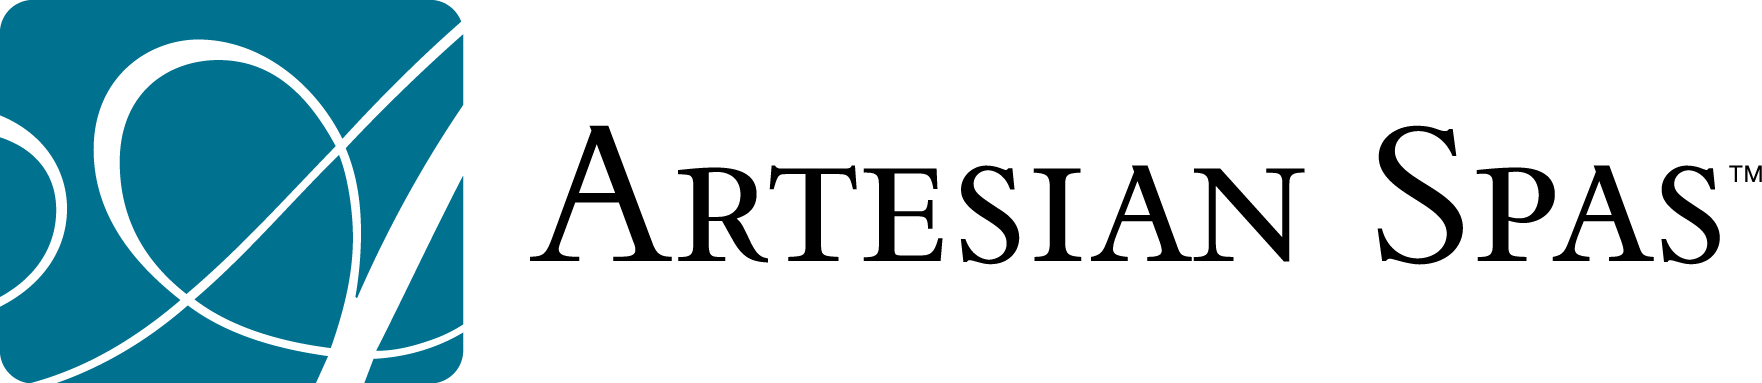 artesian spas logo in cmyk